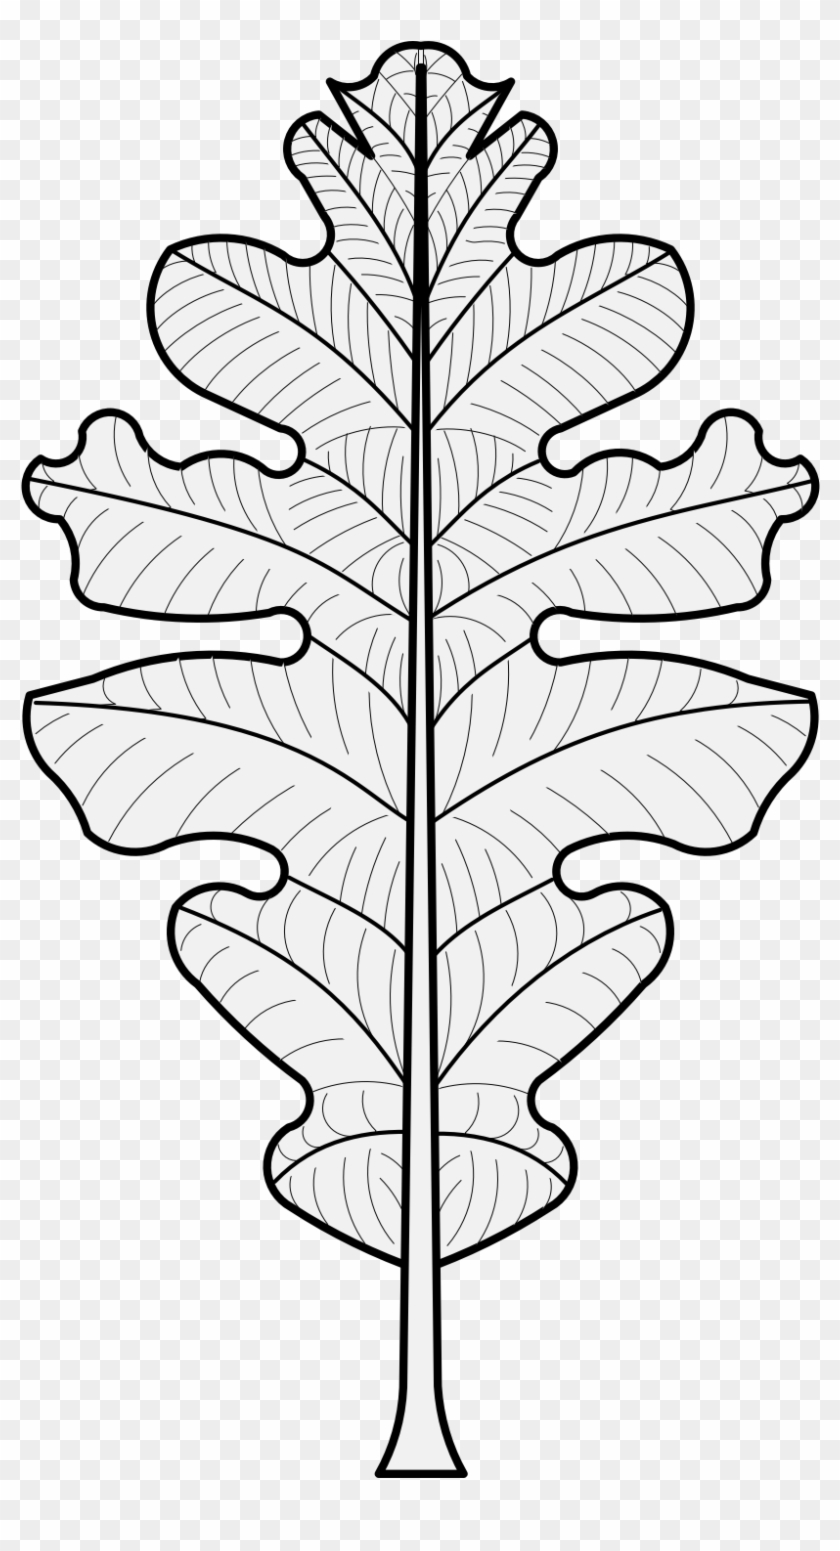 Details, Png - Oak Leaf Heraldry Clipart